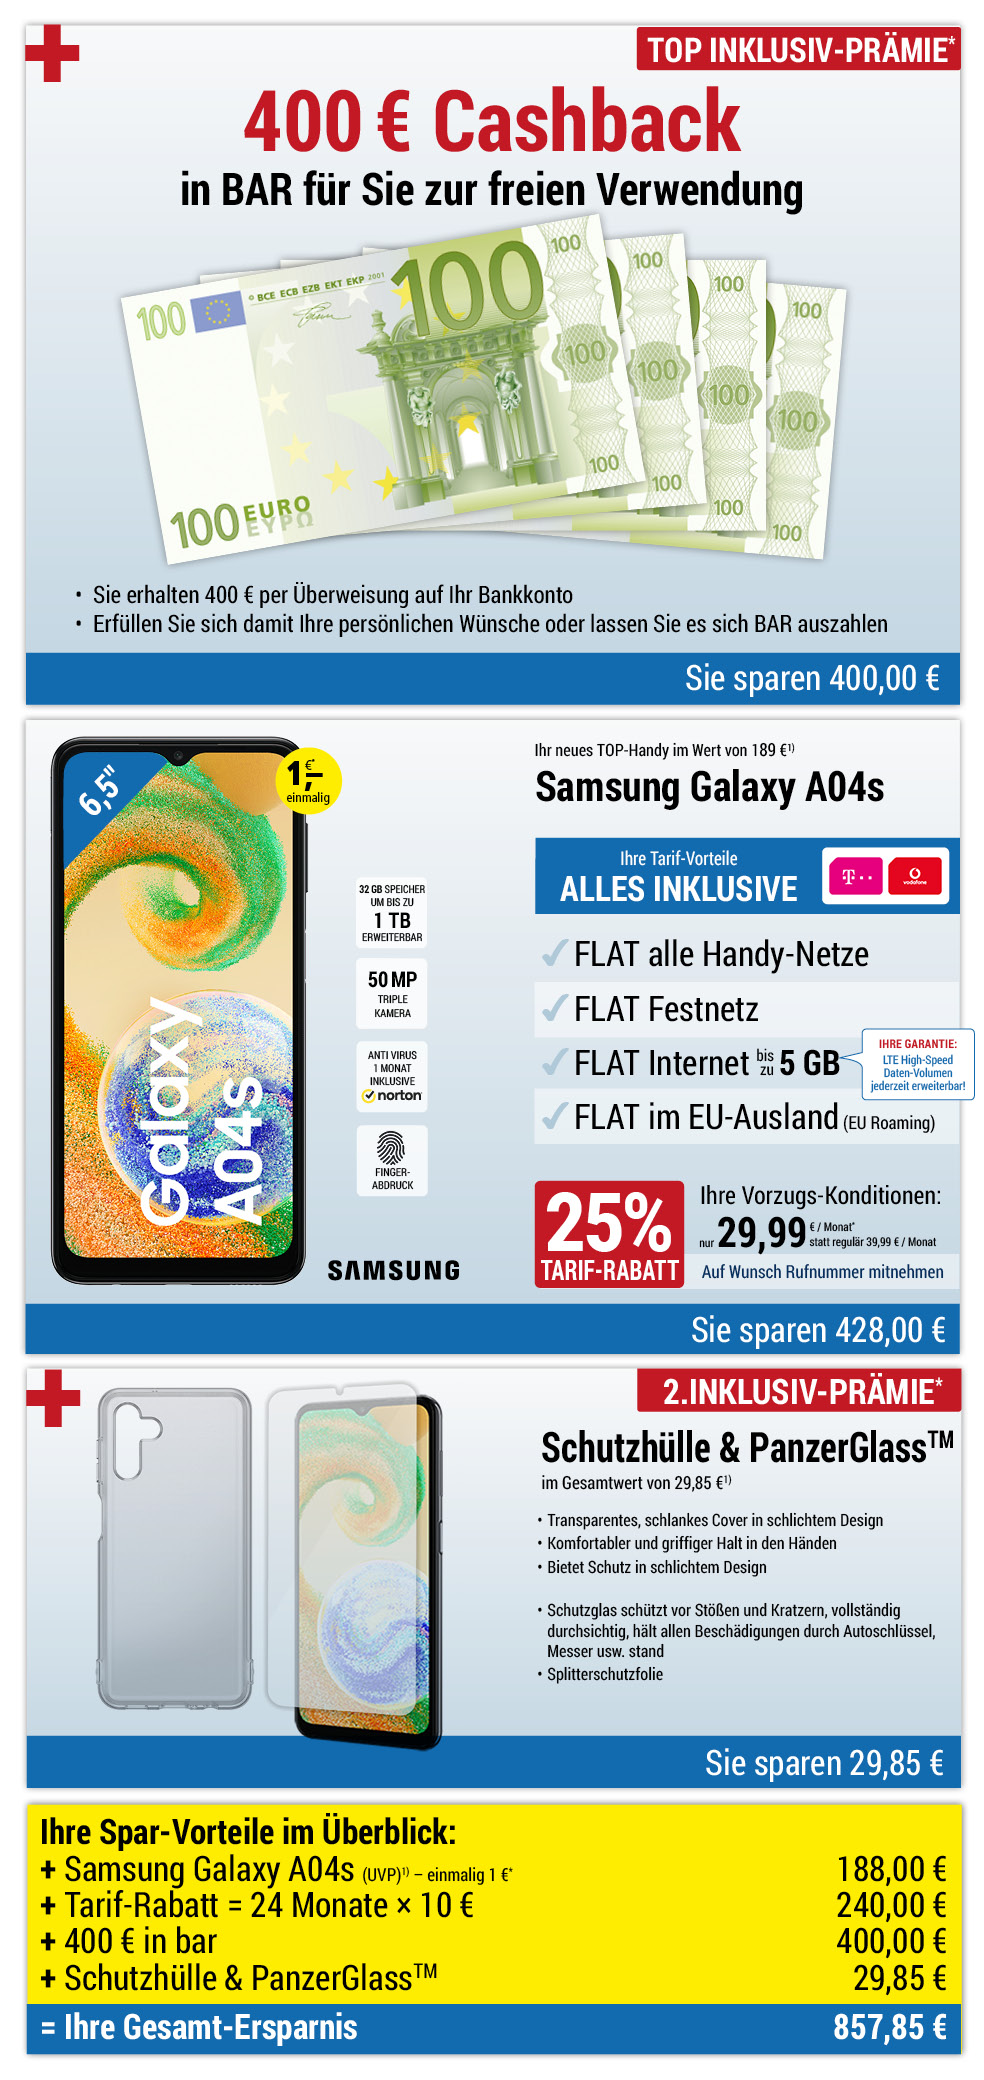 Für nur 1 €*: Samsung Galaxy A04s + Zubehör + 400 € bar INKLUSIVE + Handyverträge mit ALL NET FLAT für 29,99 €/Monat